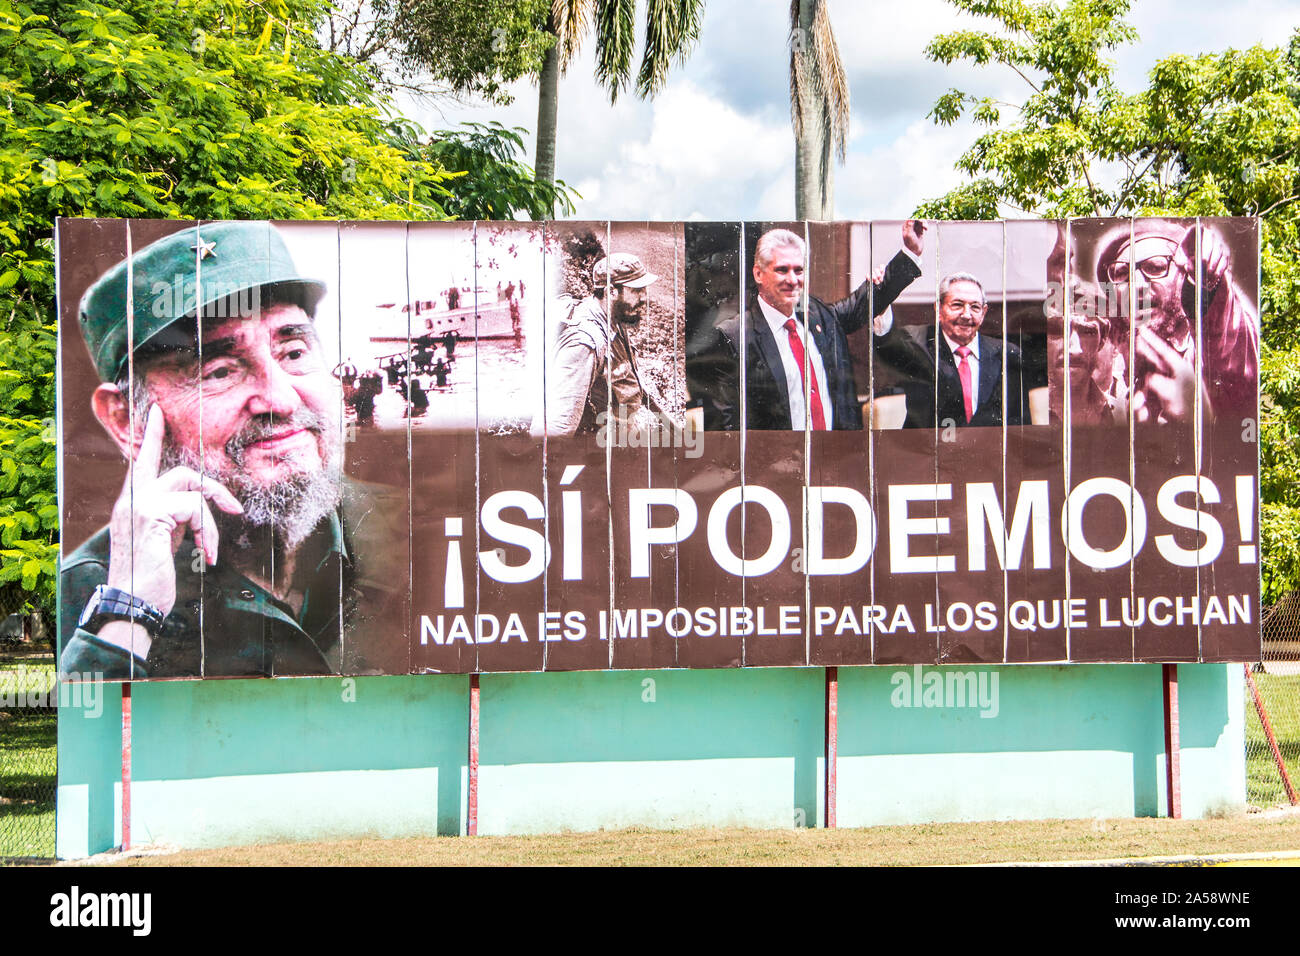 Ein propoganda Plakatwand, das in Englisch übersetzt bedeutet, "Ja, wir können. Nichts ist unmöglich für diejenigen, die kämpfen." Camaguey, Kuba Stockfoto